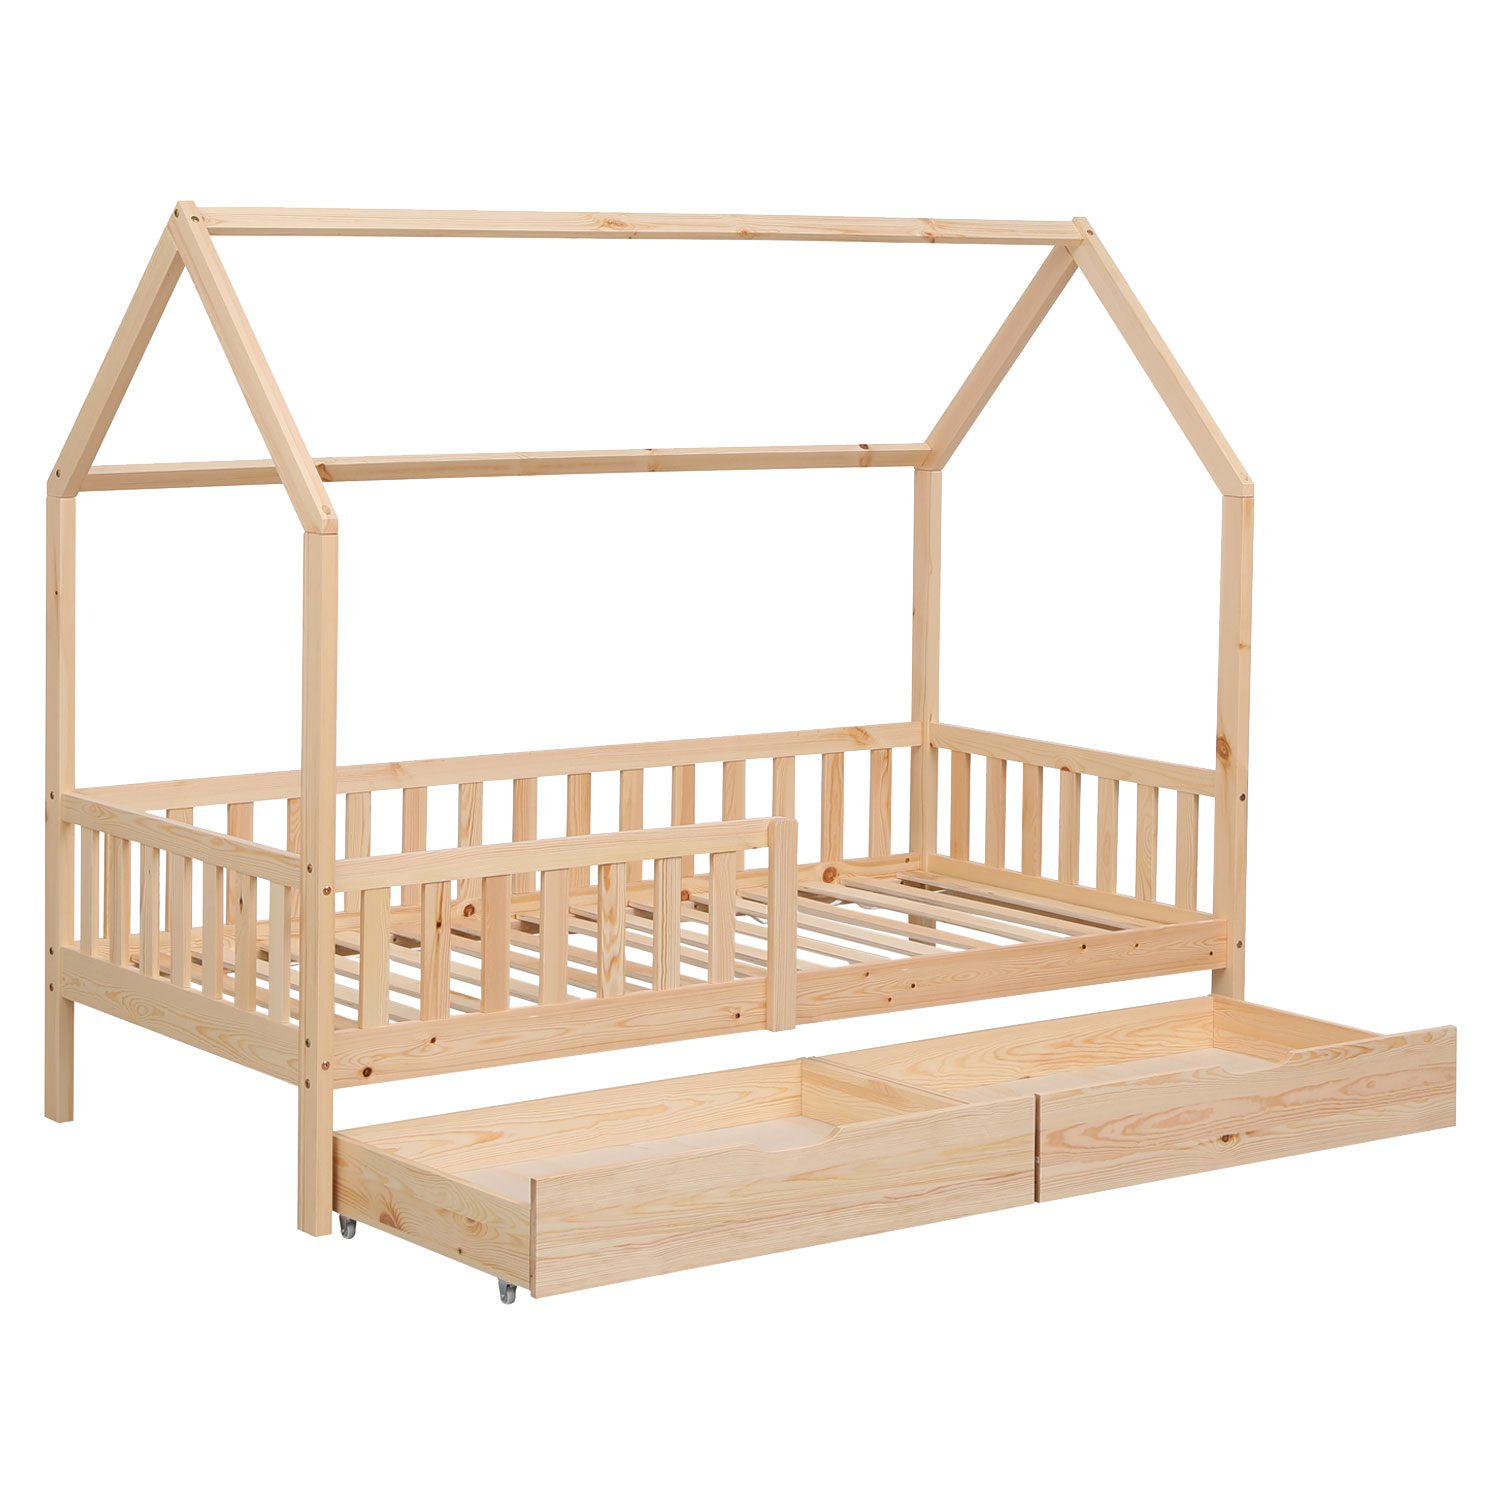 Cama cabaña con cajones de madera para niños MARCEAU 190x90cm